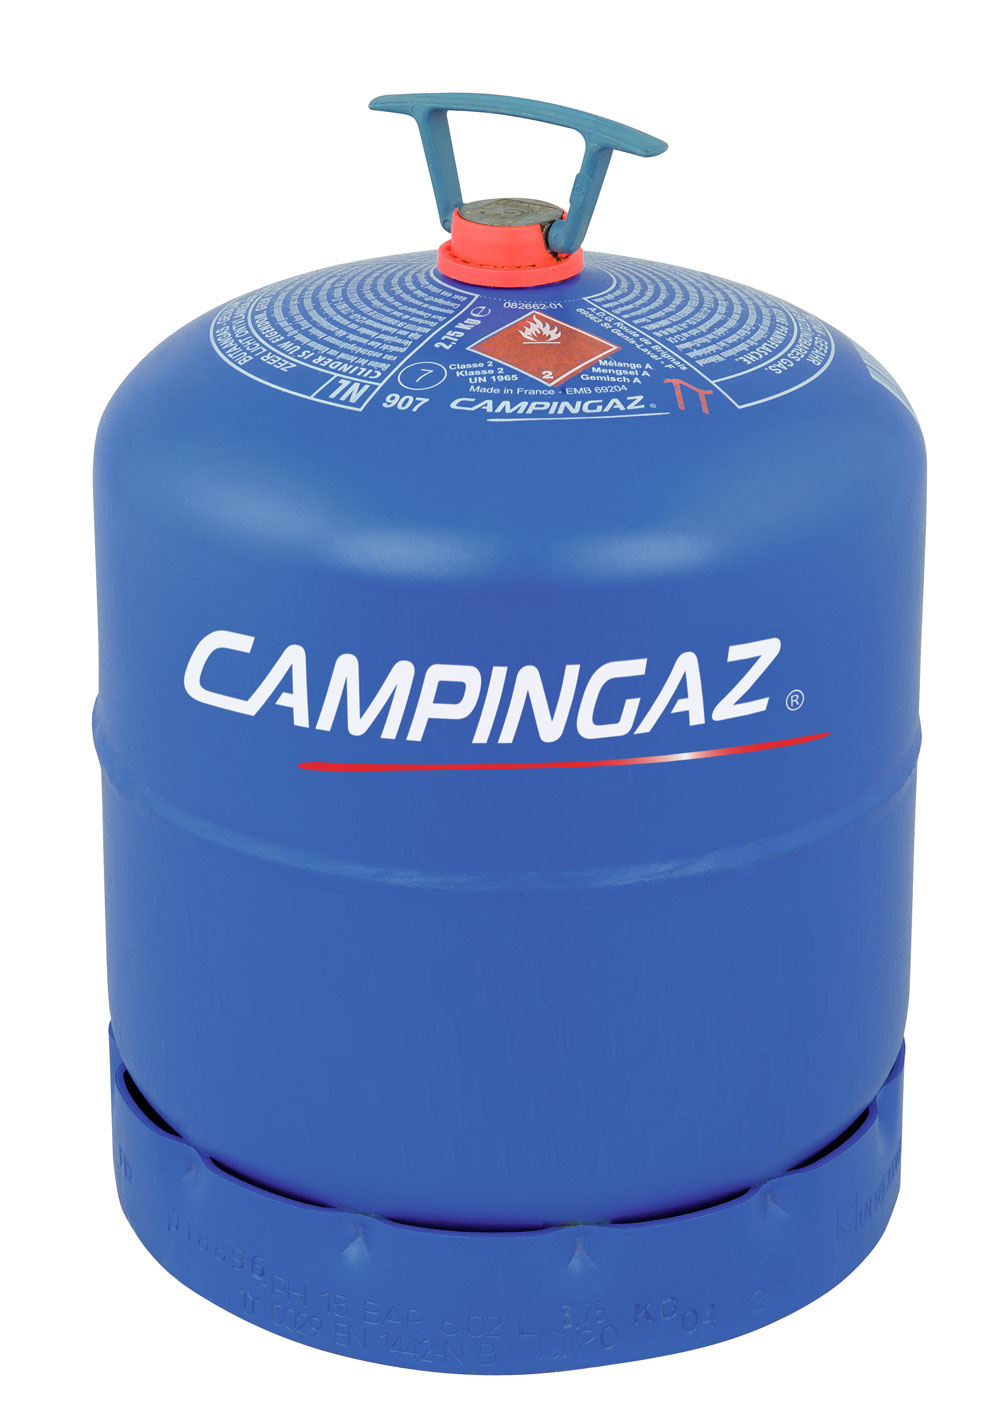 Campingaz R 907 Gasflasche: 2,75 kg Butangas - Ihre Eigentumsflasche für das Tauschsystem